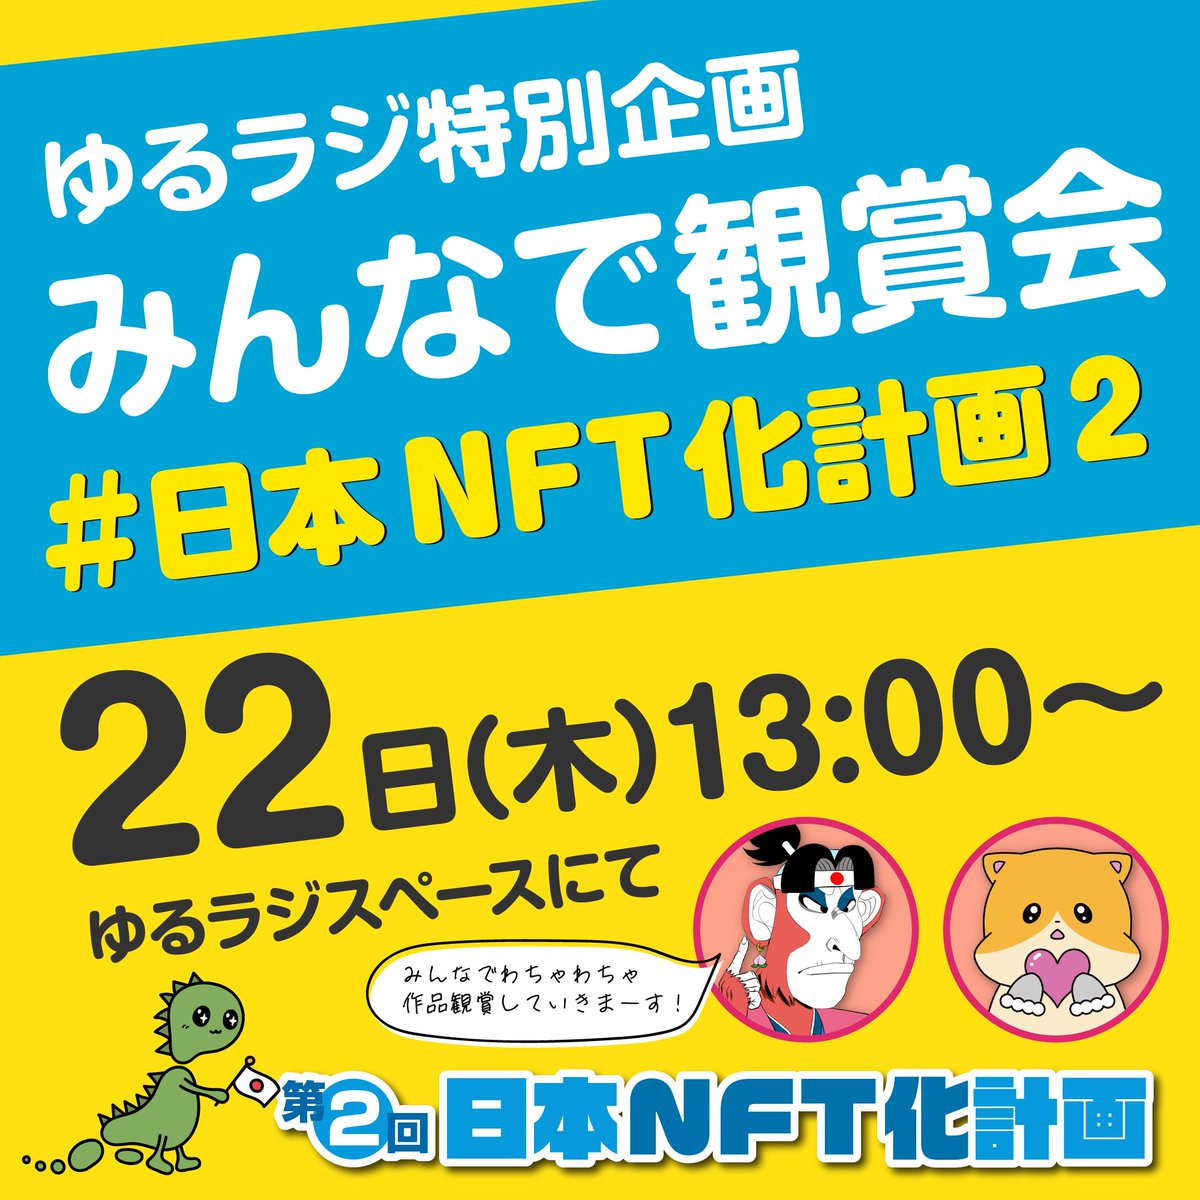 #日本NFT化計画2  
22日13時～
日本NFT化計画2に参加された方必見✨️
明日のゆるラジで作品観賞会をやります🔥

参加された方も、そうでない方も一緒に楽しみましょう☺️
お得な情報もあるかも🌈